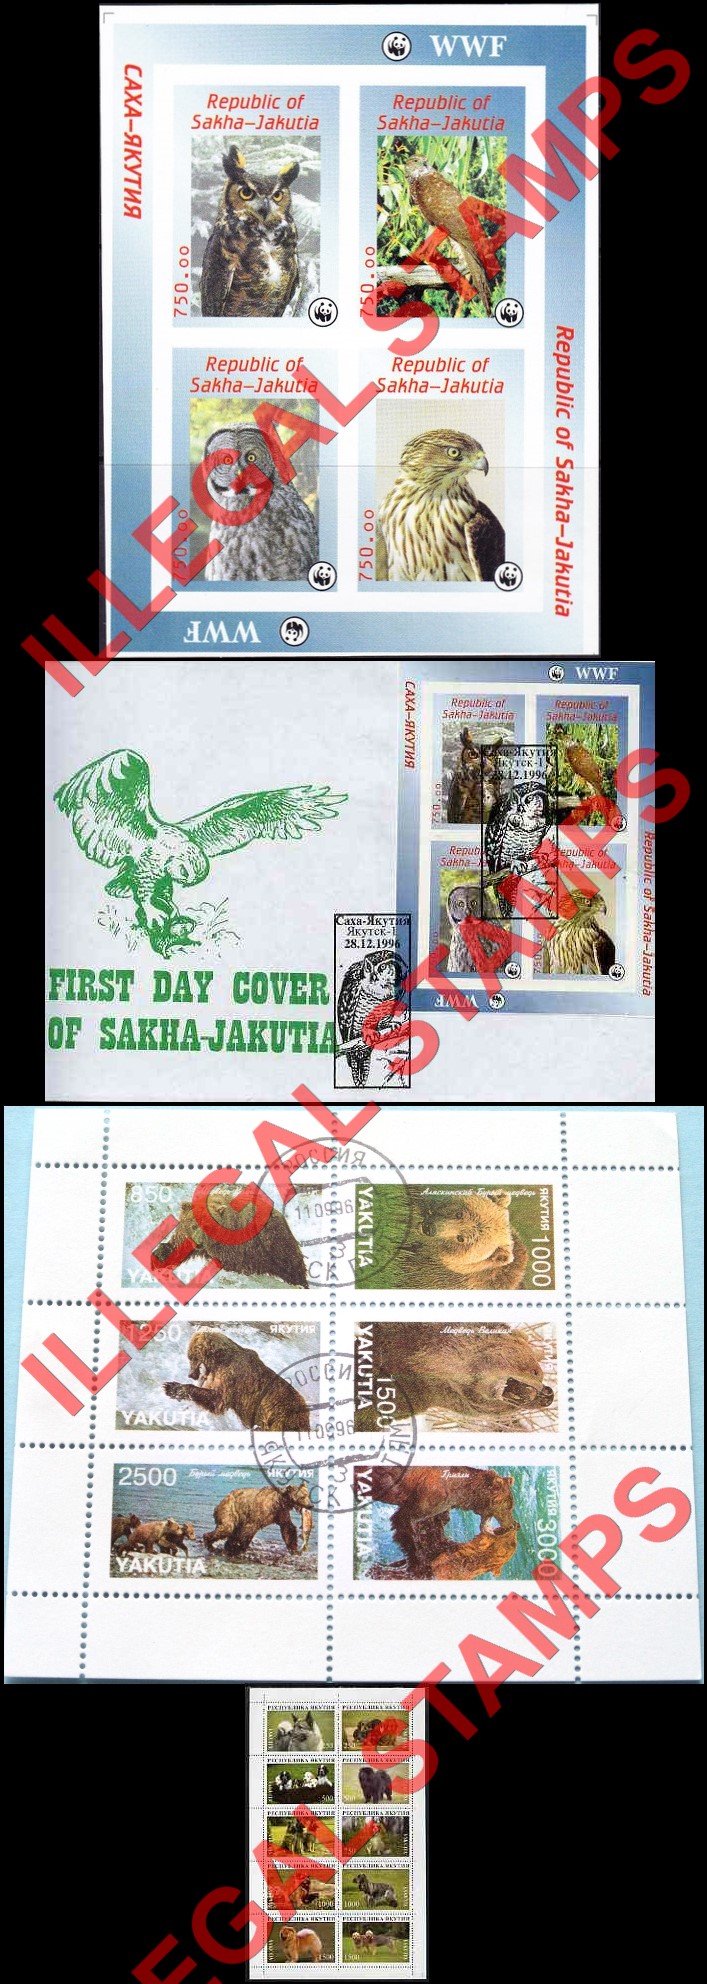 Republic of Sakha Yakutia 1996 Counterfeit Illegal Stamps